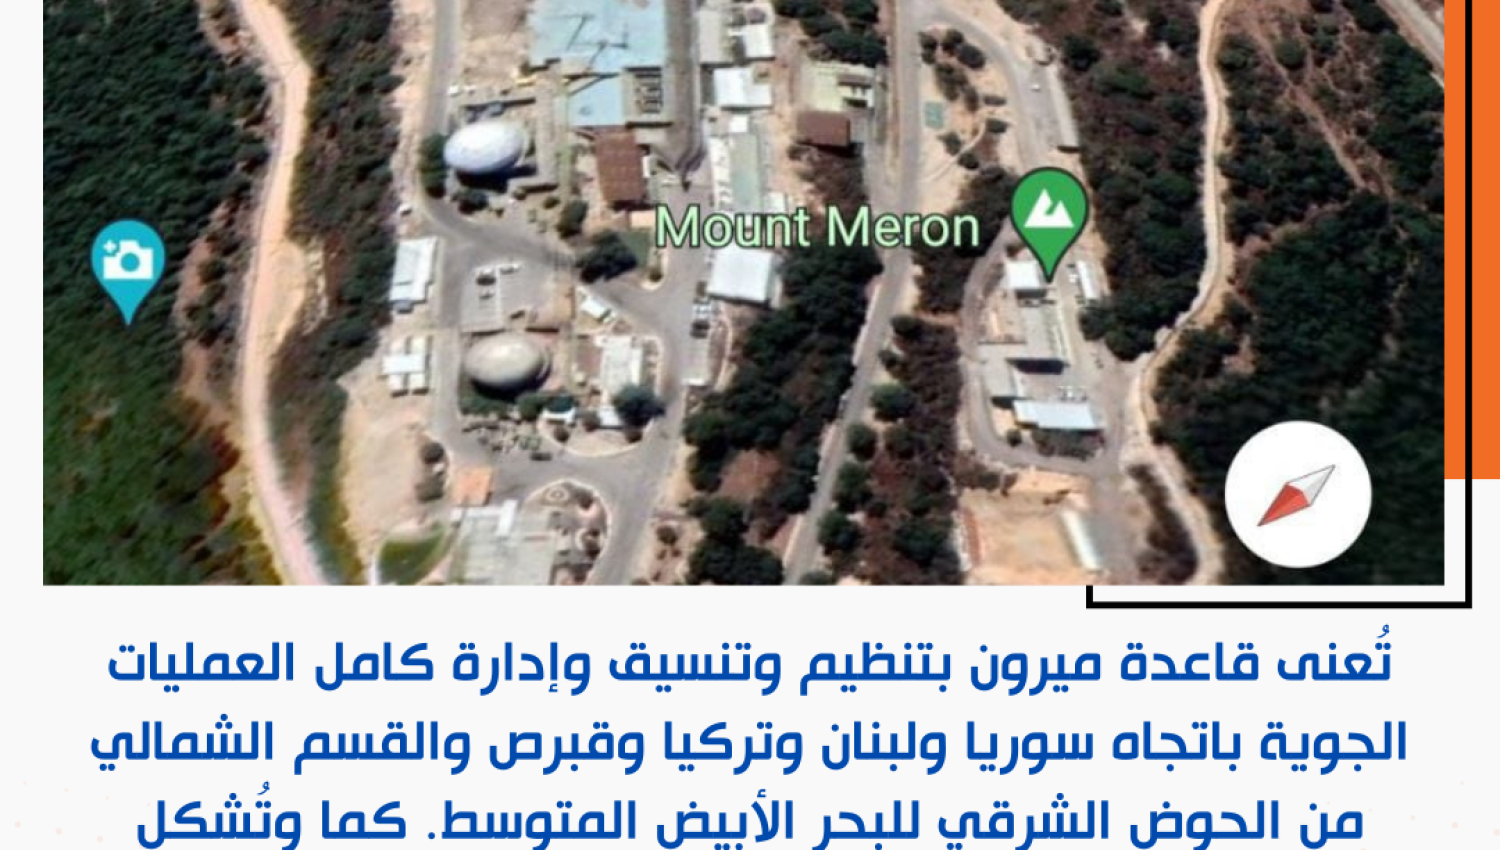 المقاومة الإسلامية: تُعنى قاعدة ميرون بتنظيم كامل العمليات الجوية شمال فلسطين 